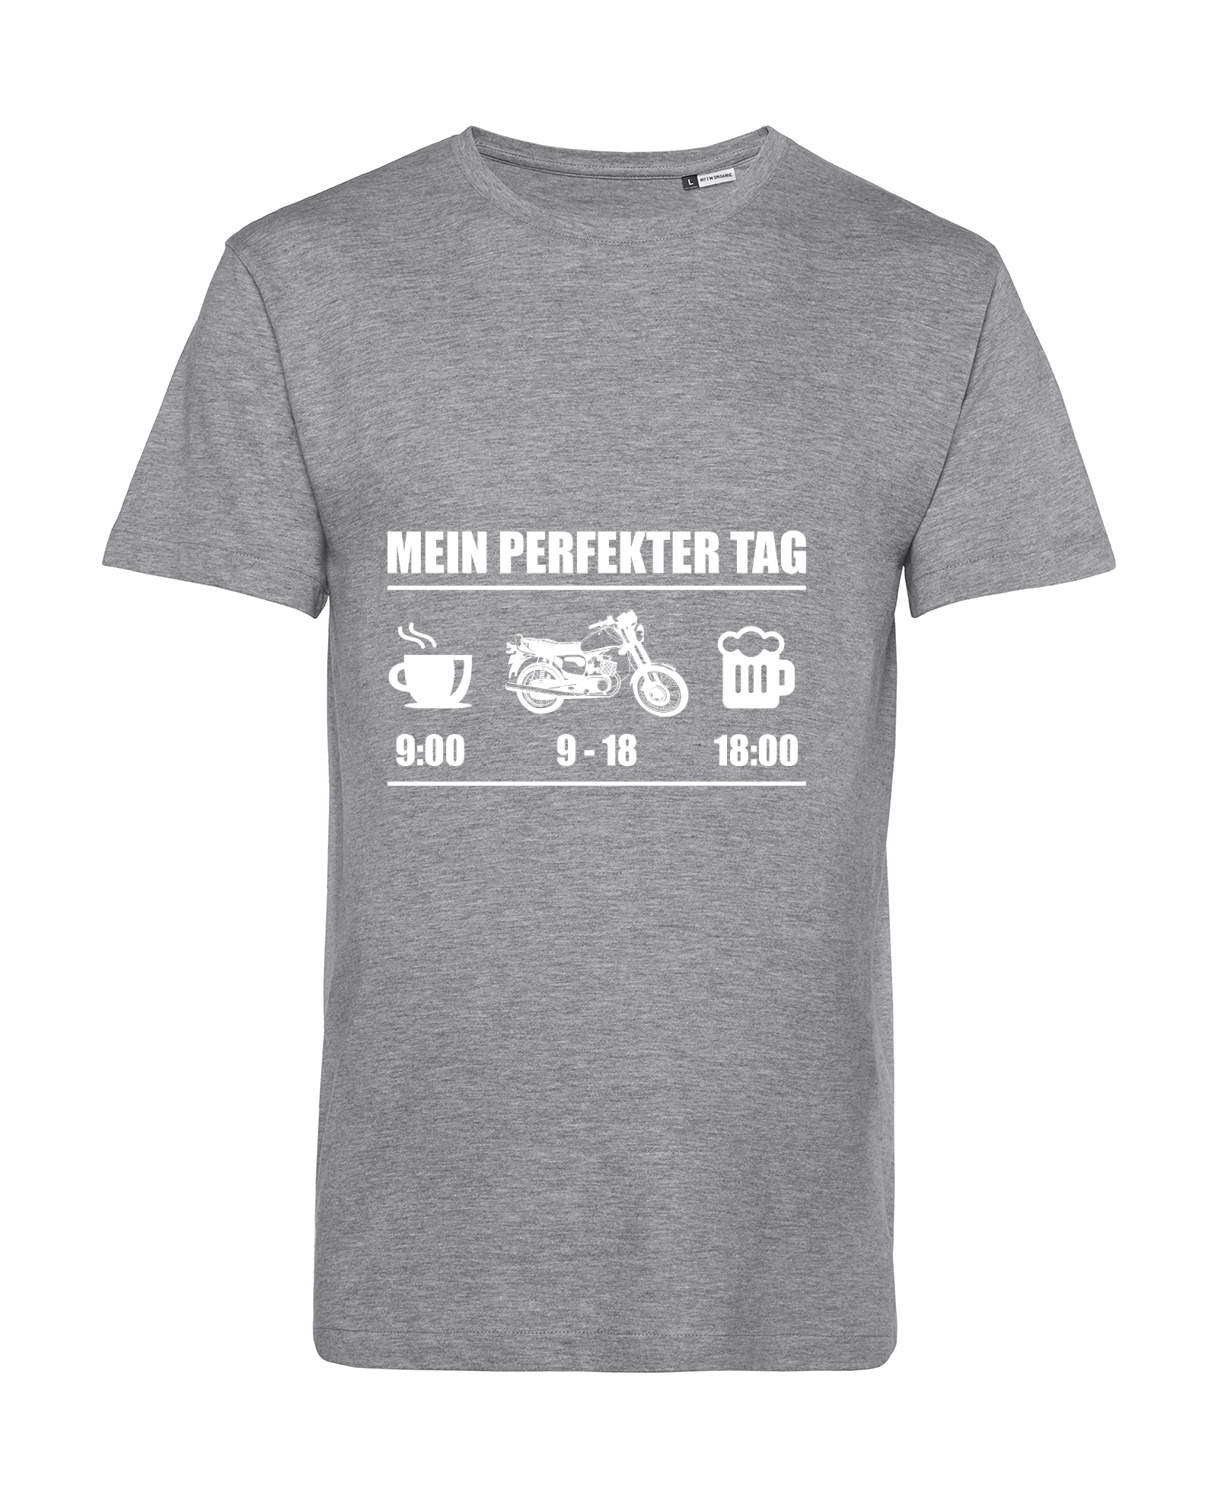 Nachhaltiges T-Shirt Herren 2Takter - Mein perfekter Tag MZ